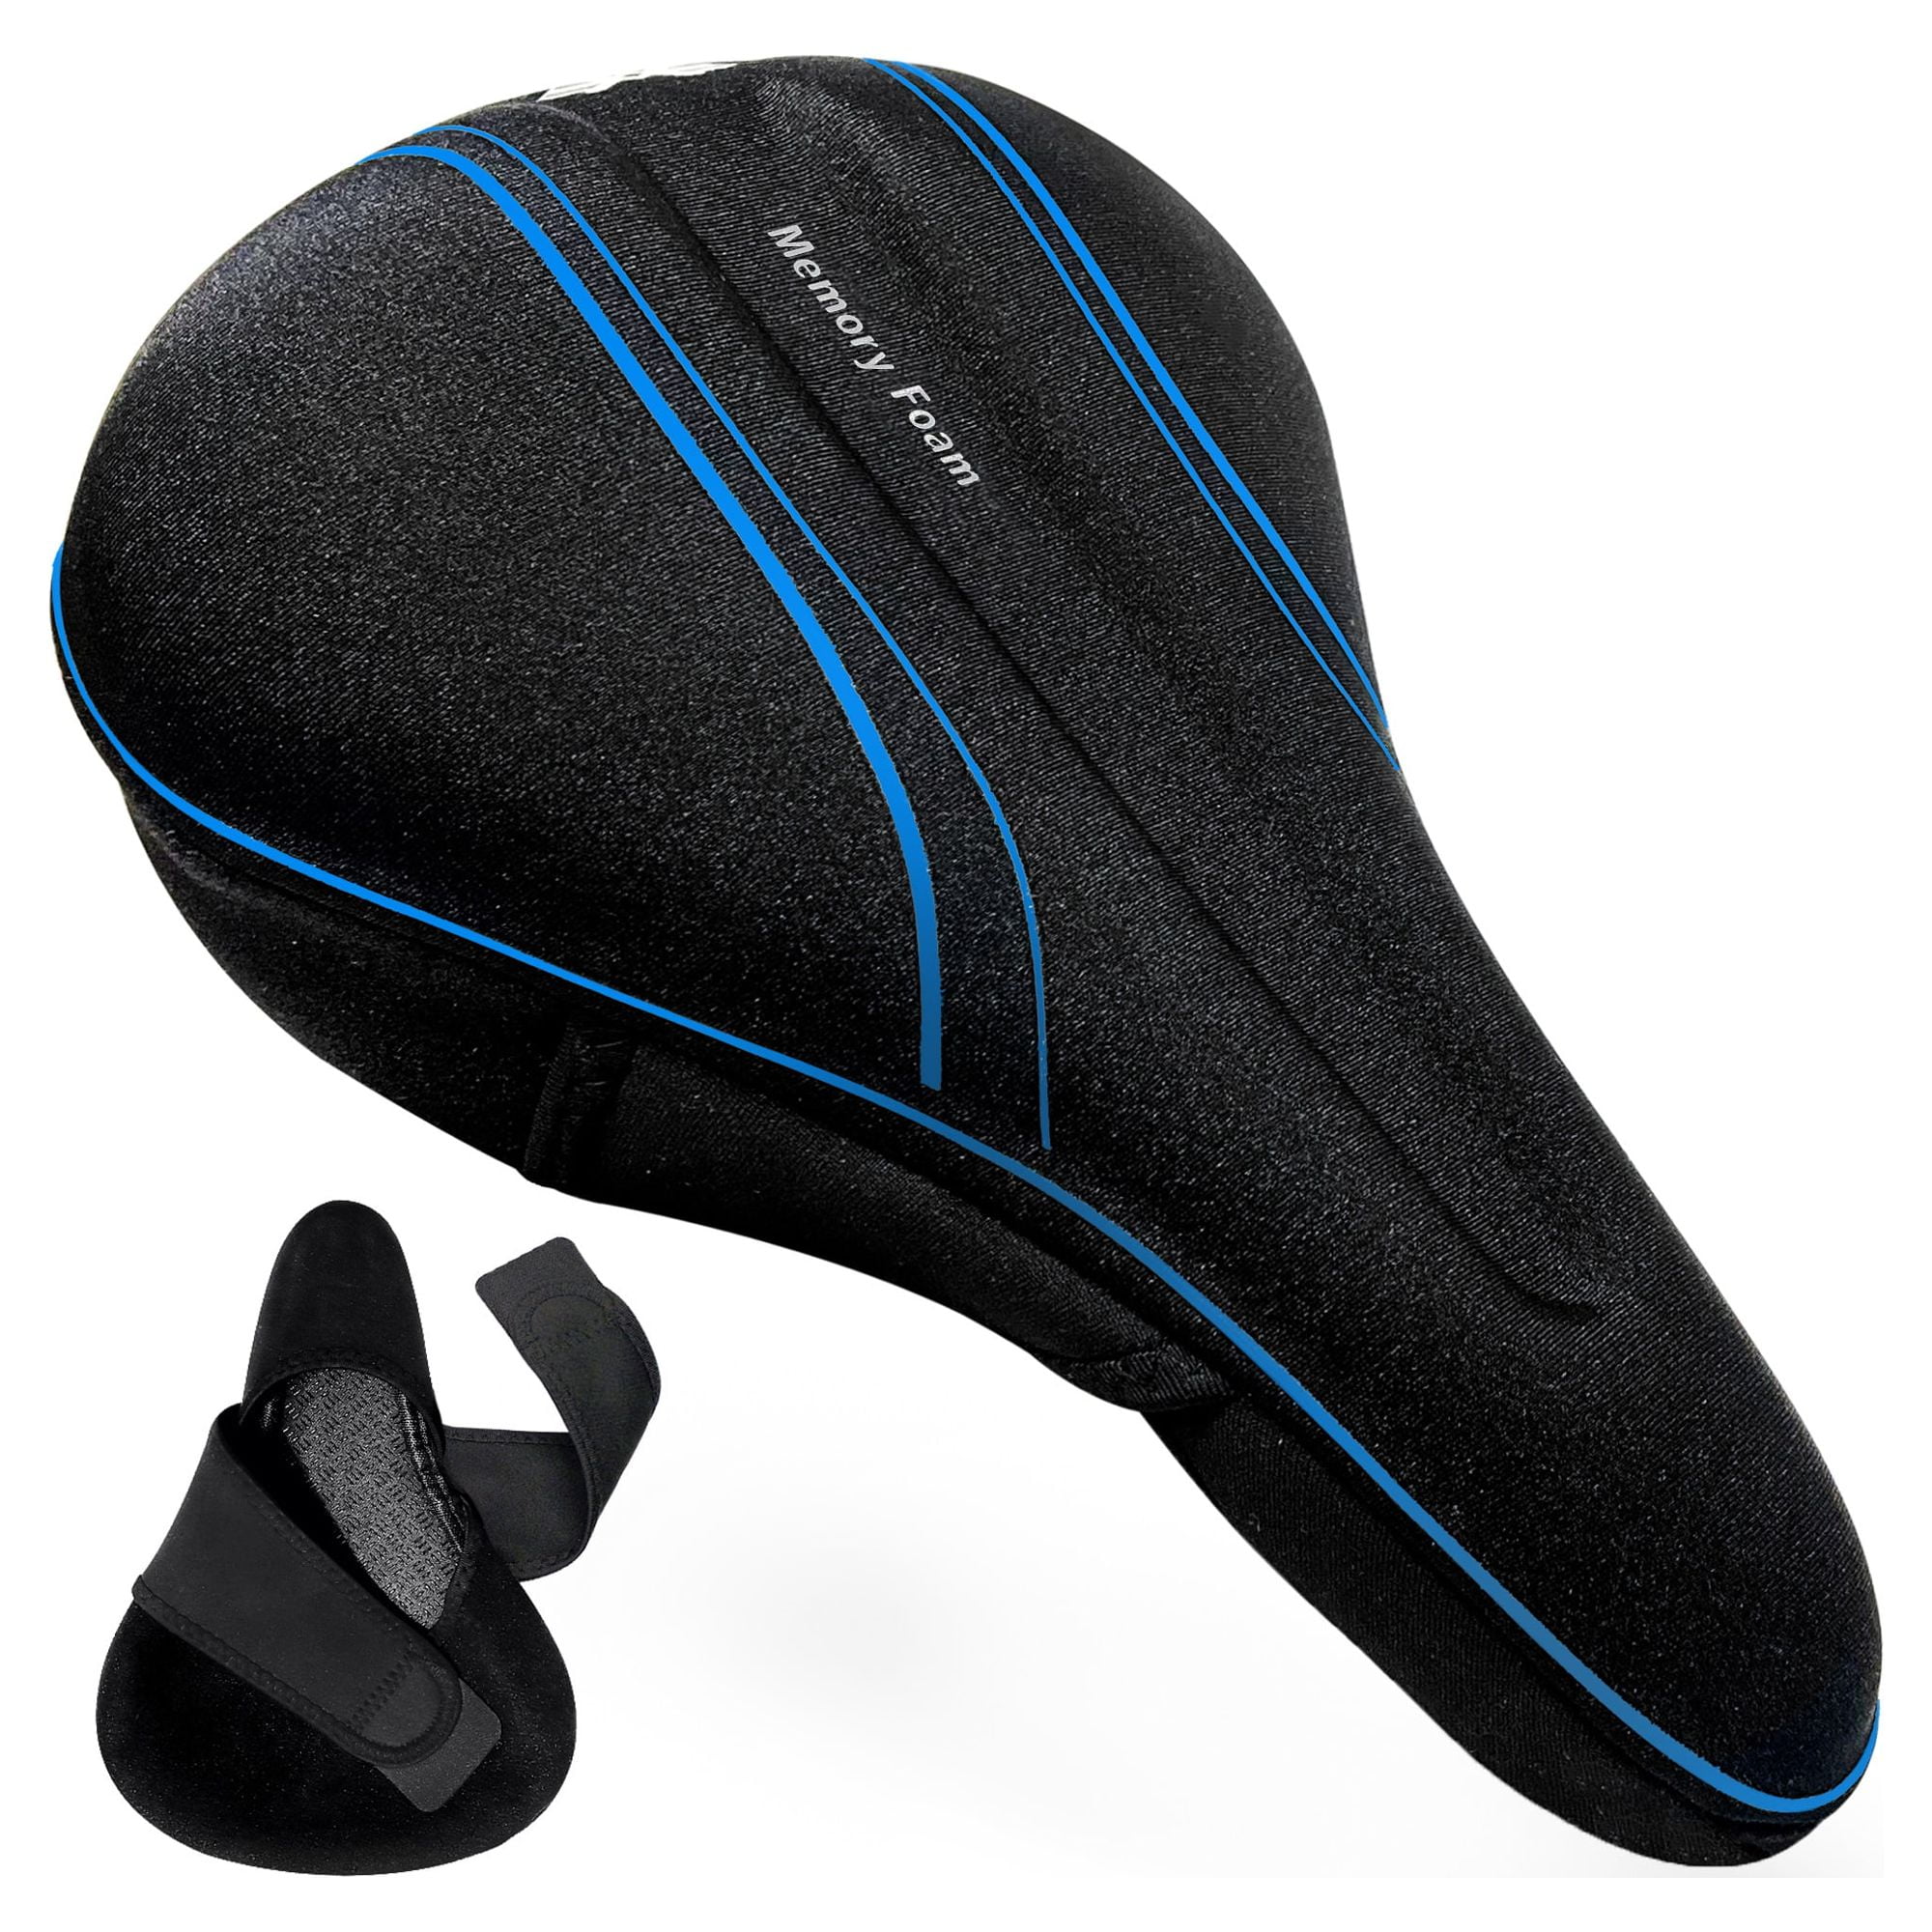 Pegasus Premium Extra Comfort Memory Foam Seat Cover